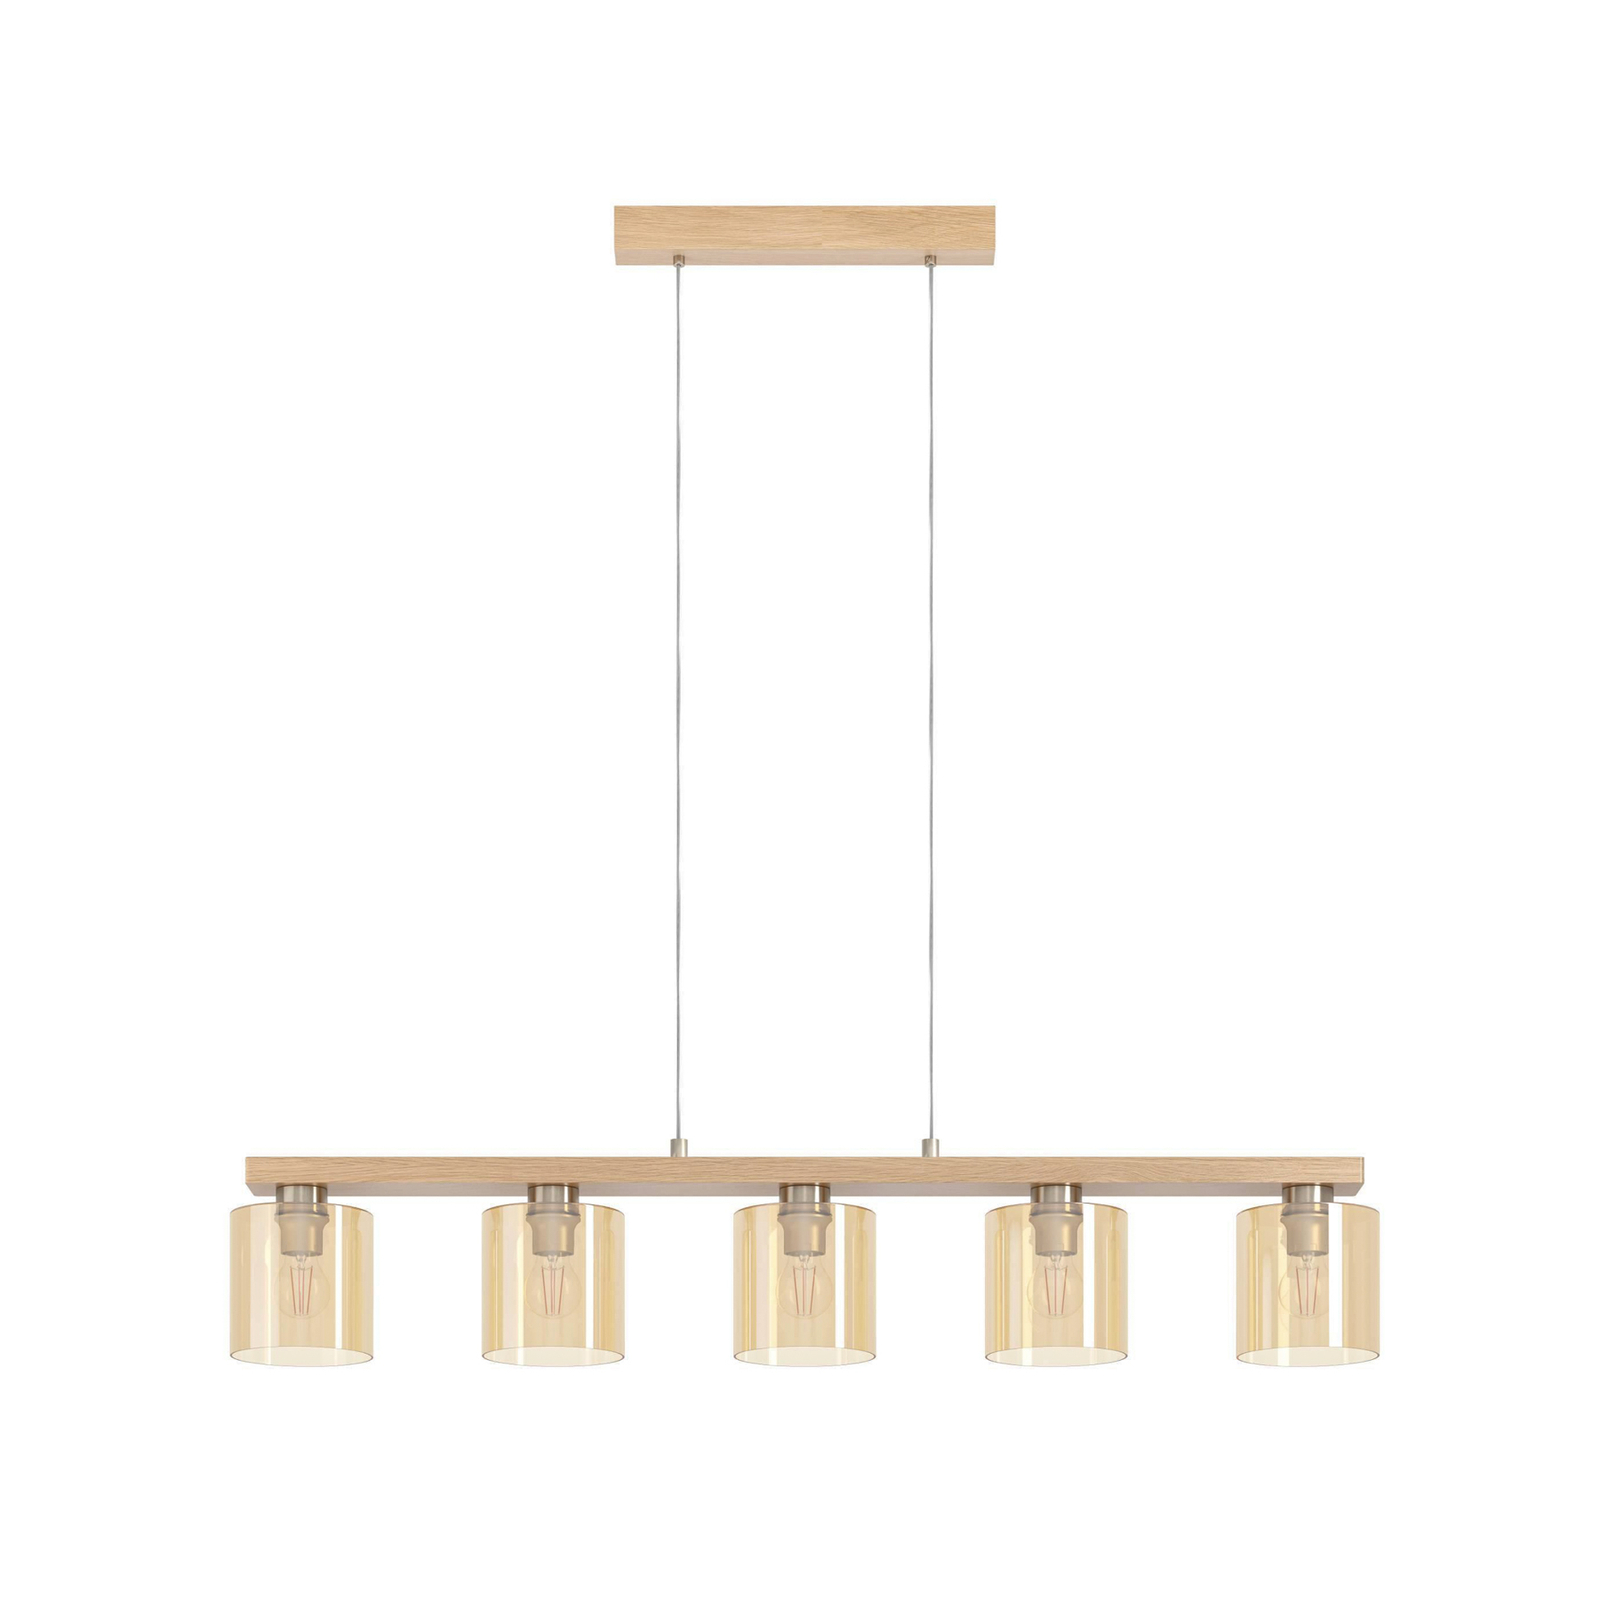 Castralvo viseča svetilka, dolžina 115 cm, les/jantar, 5 luči, steklo